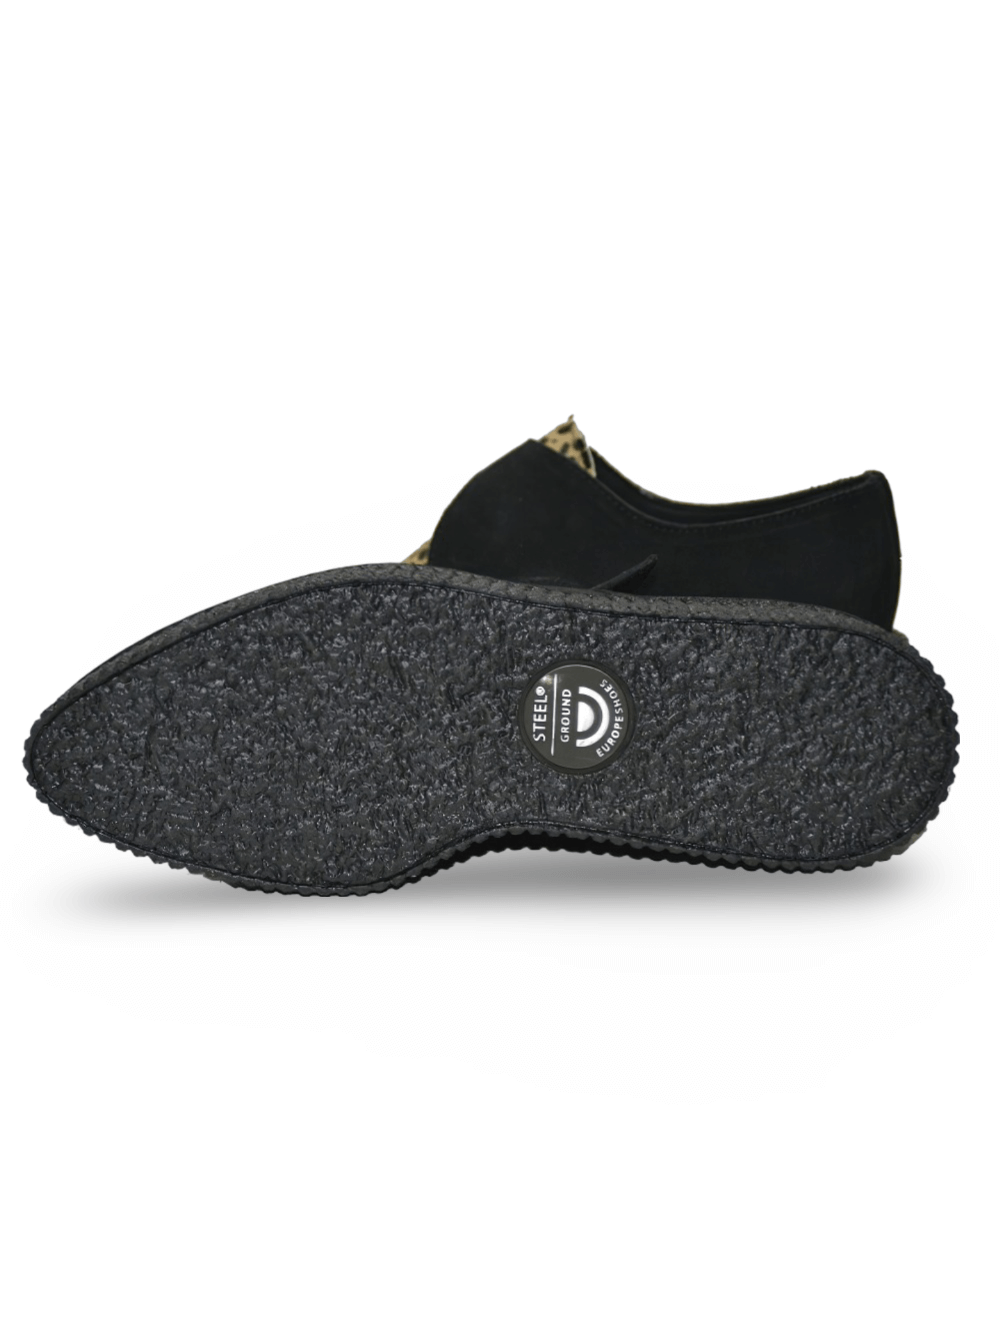 Unisex-Creeper-Schuhe zum Schnüren in Schwarz und Leopardenmuster